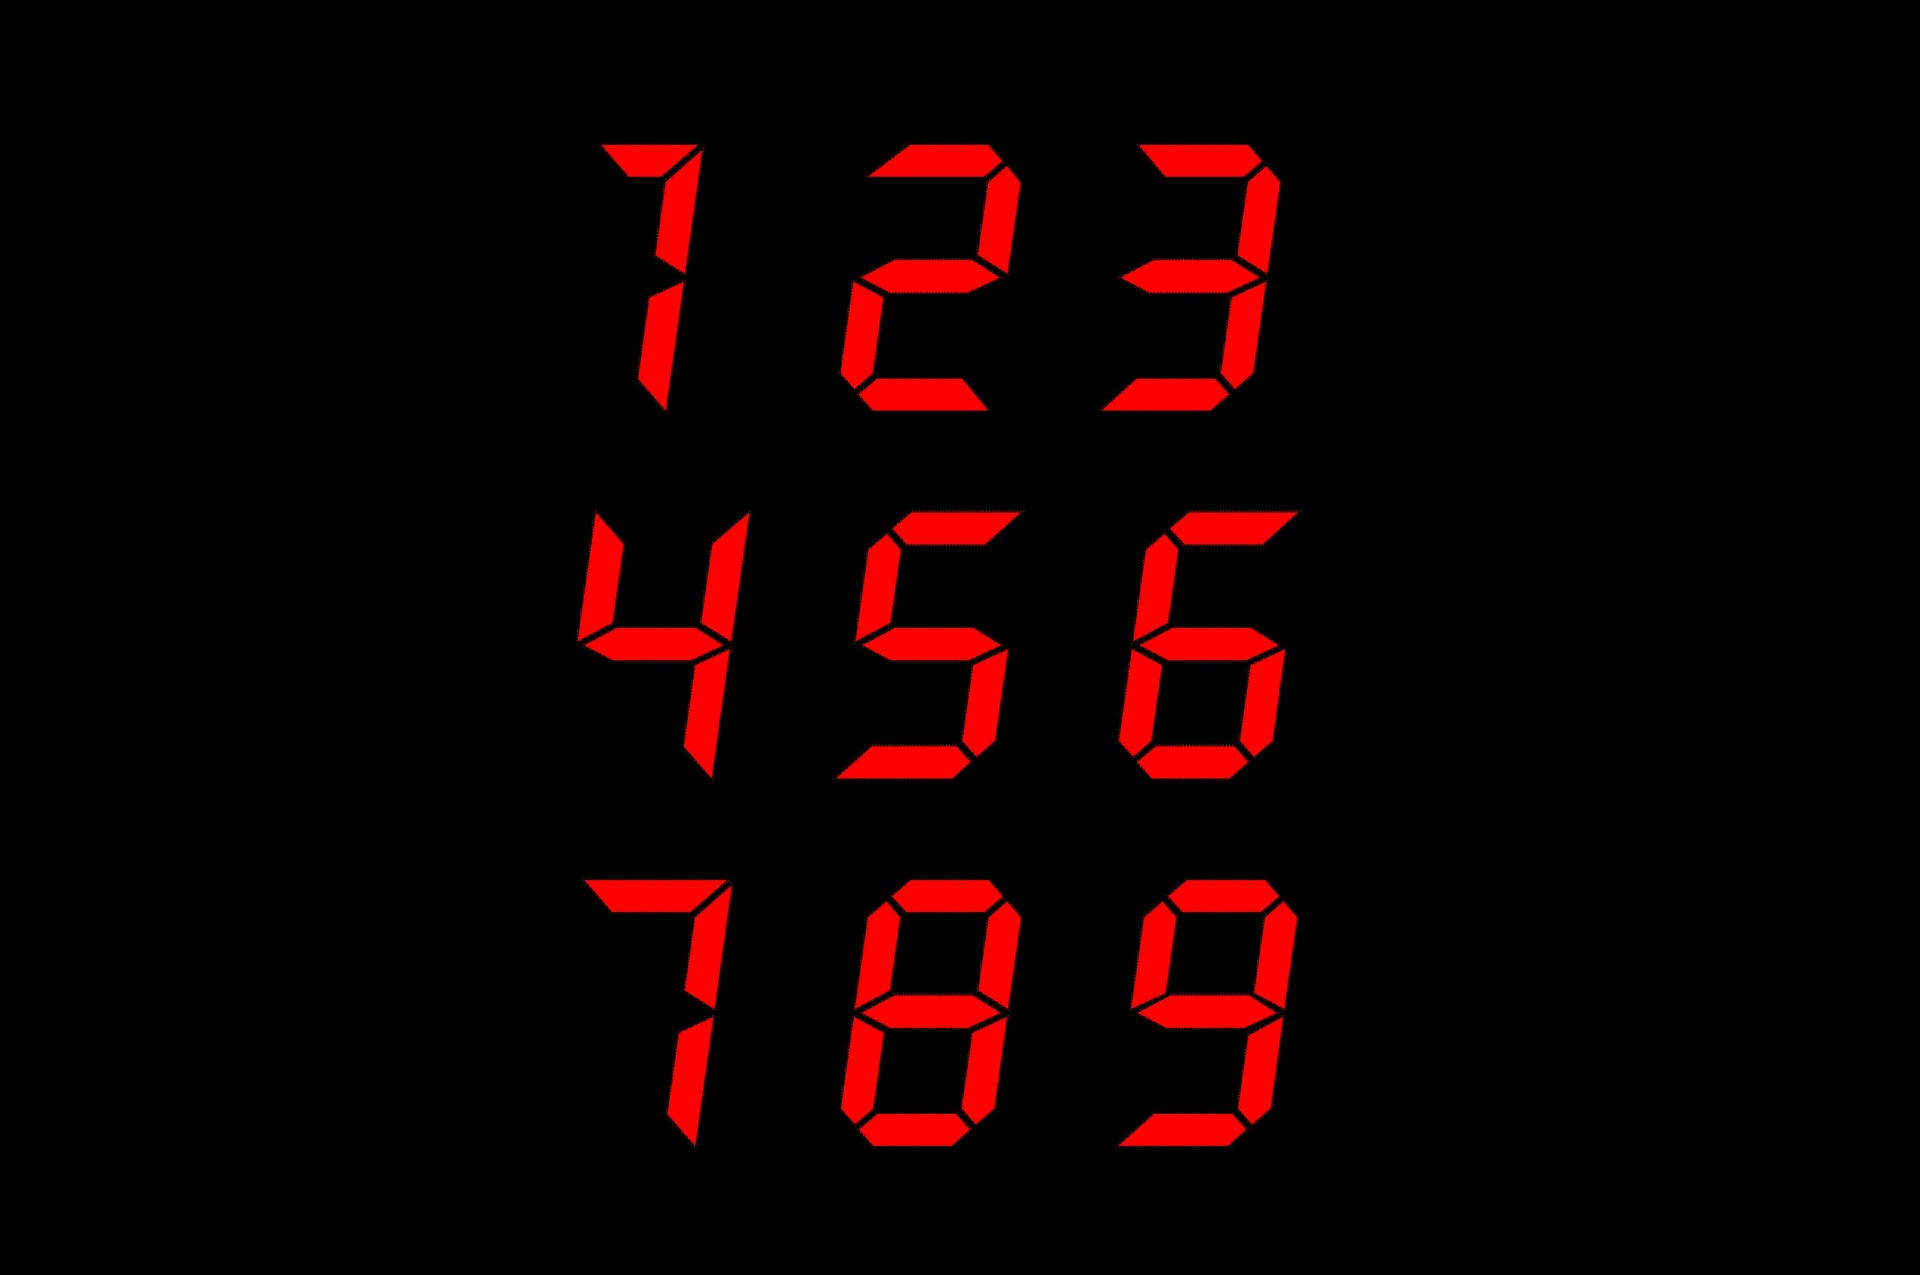 Red Digital Numbers